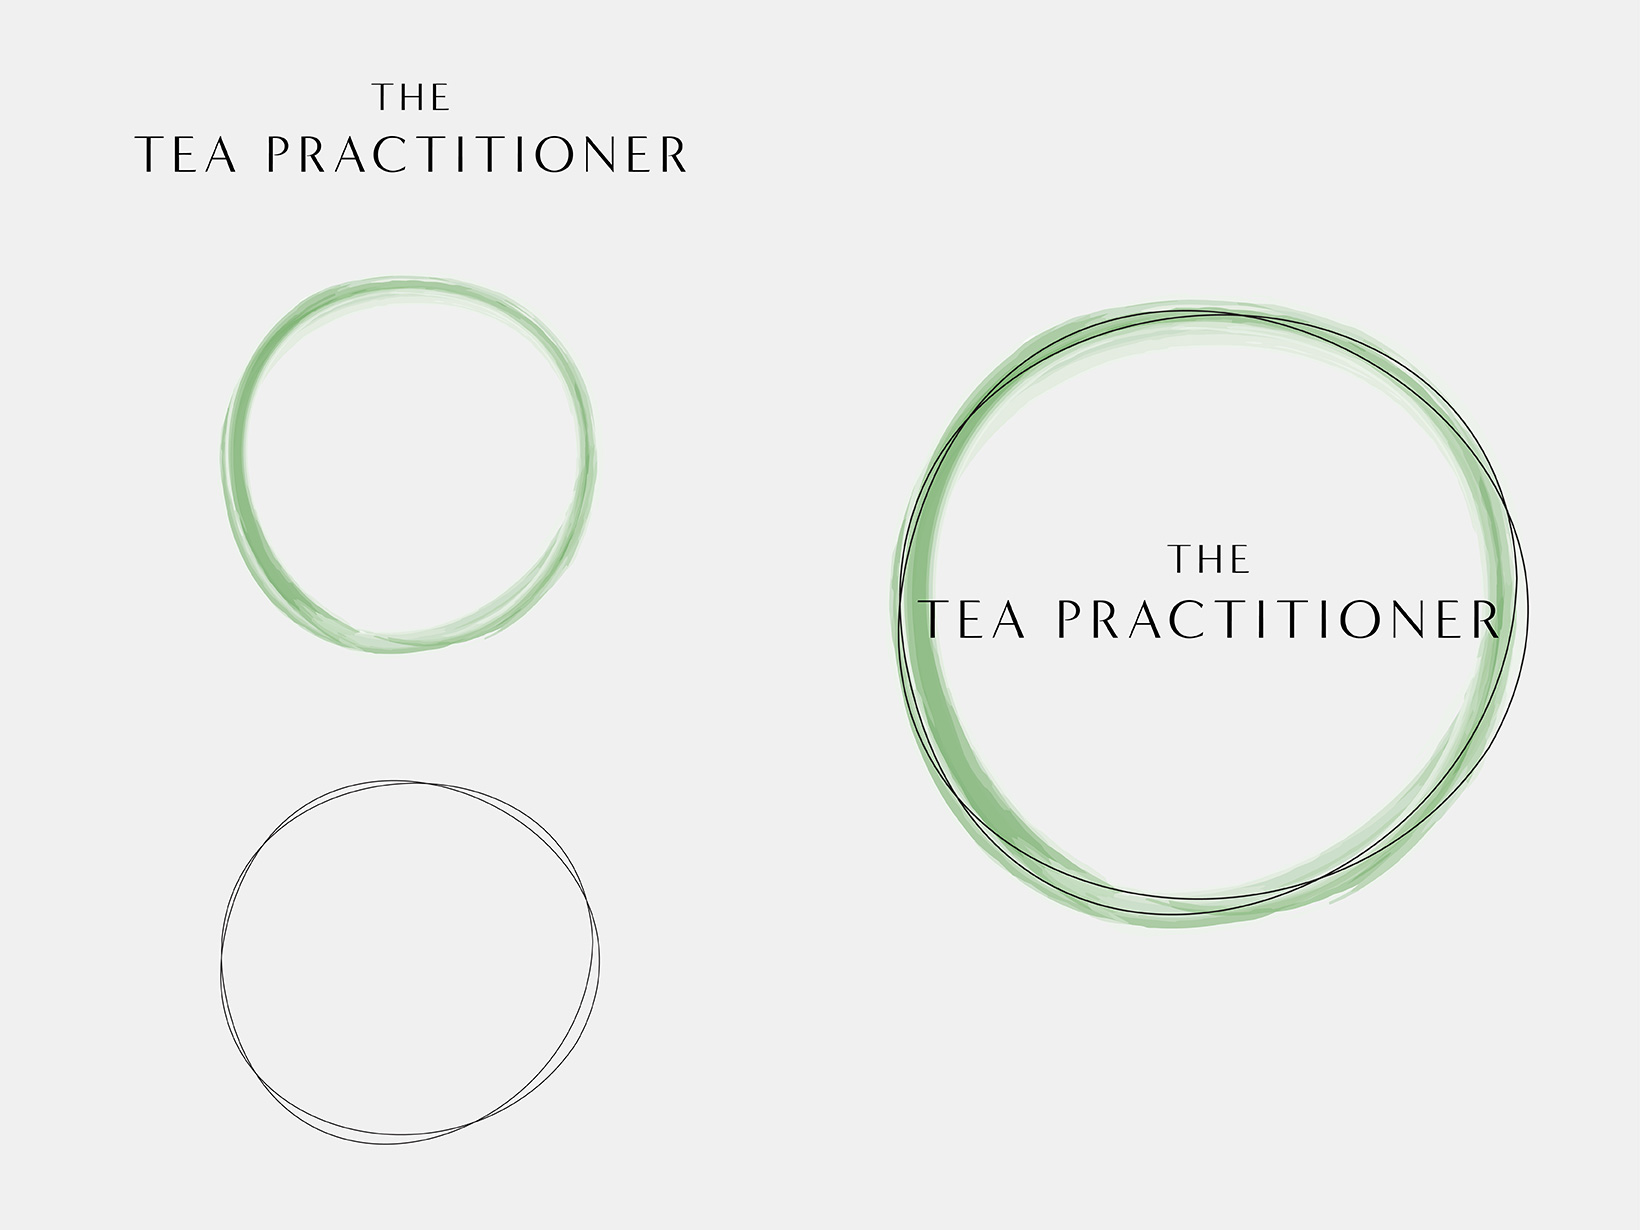 The Tea Practitioner logo broken down into the wordmark reading 